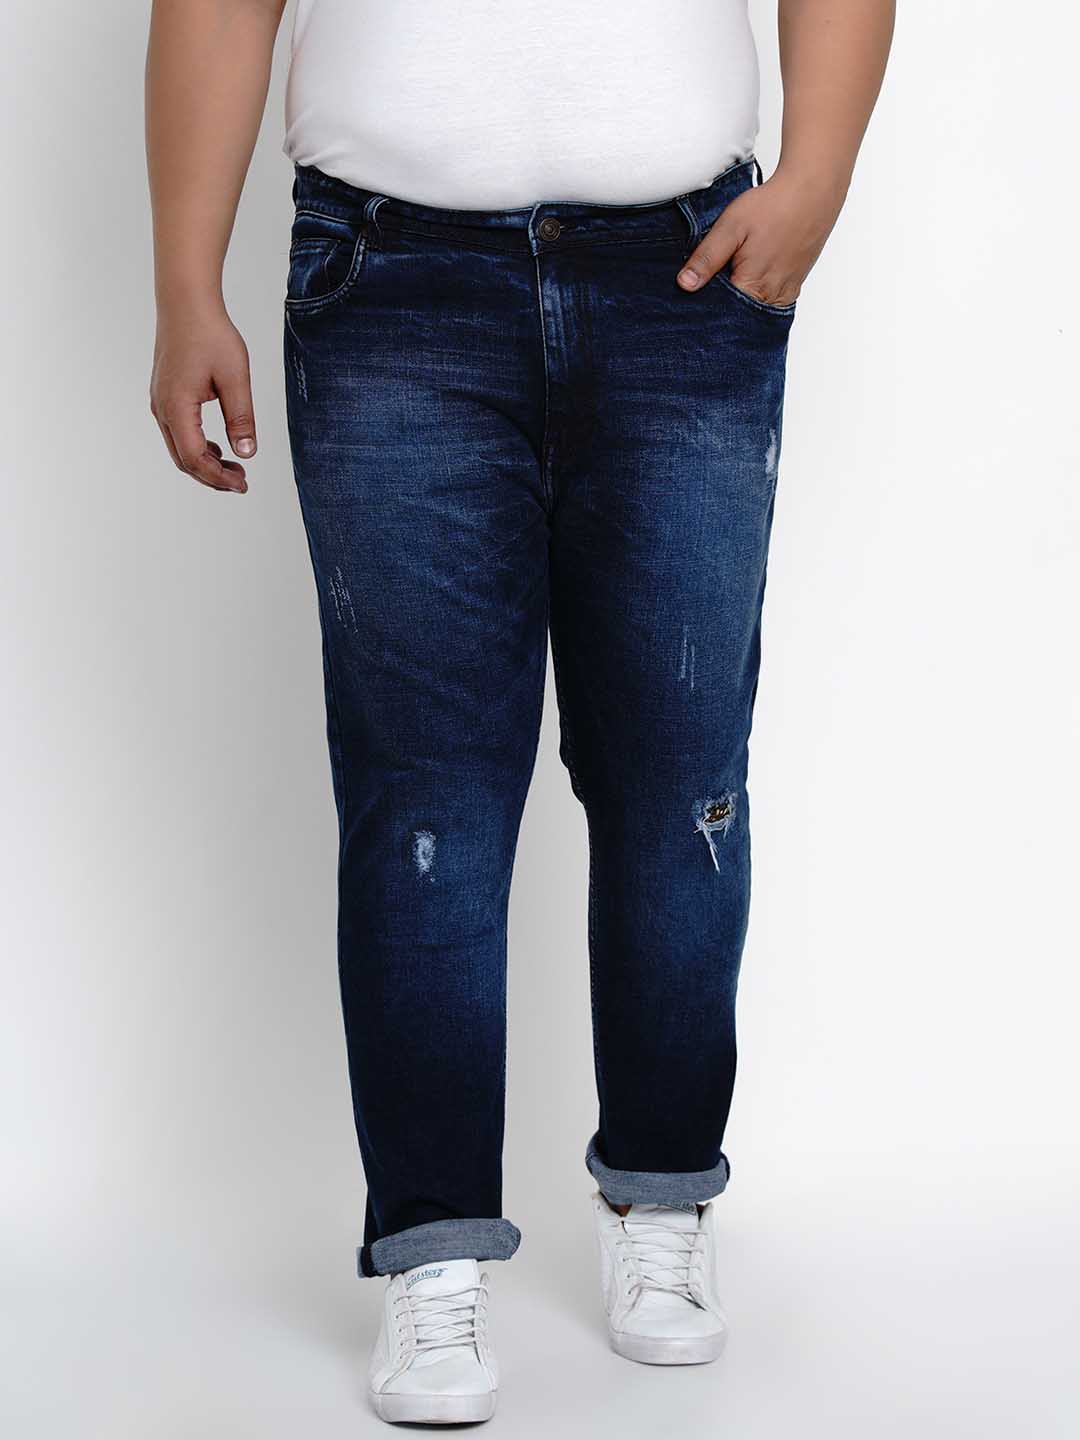 bottomwear/jeans/BEPLJPJ1270/bepljpj1270-1.jpg